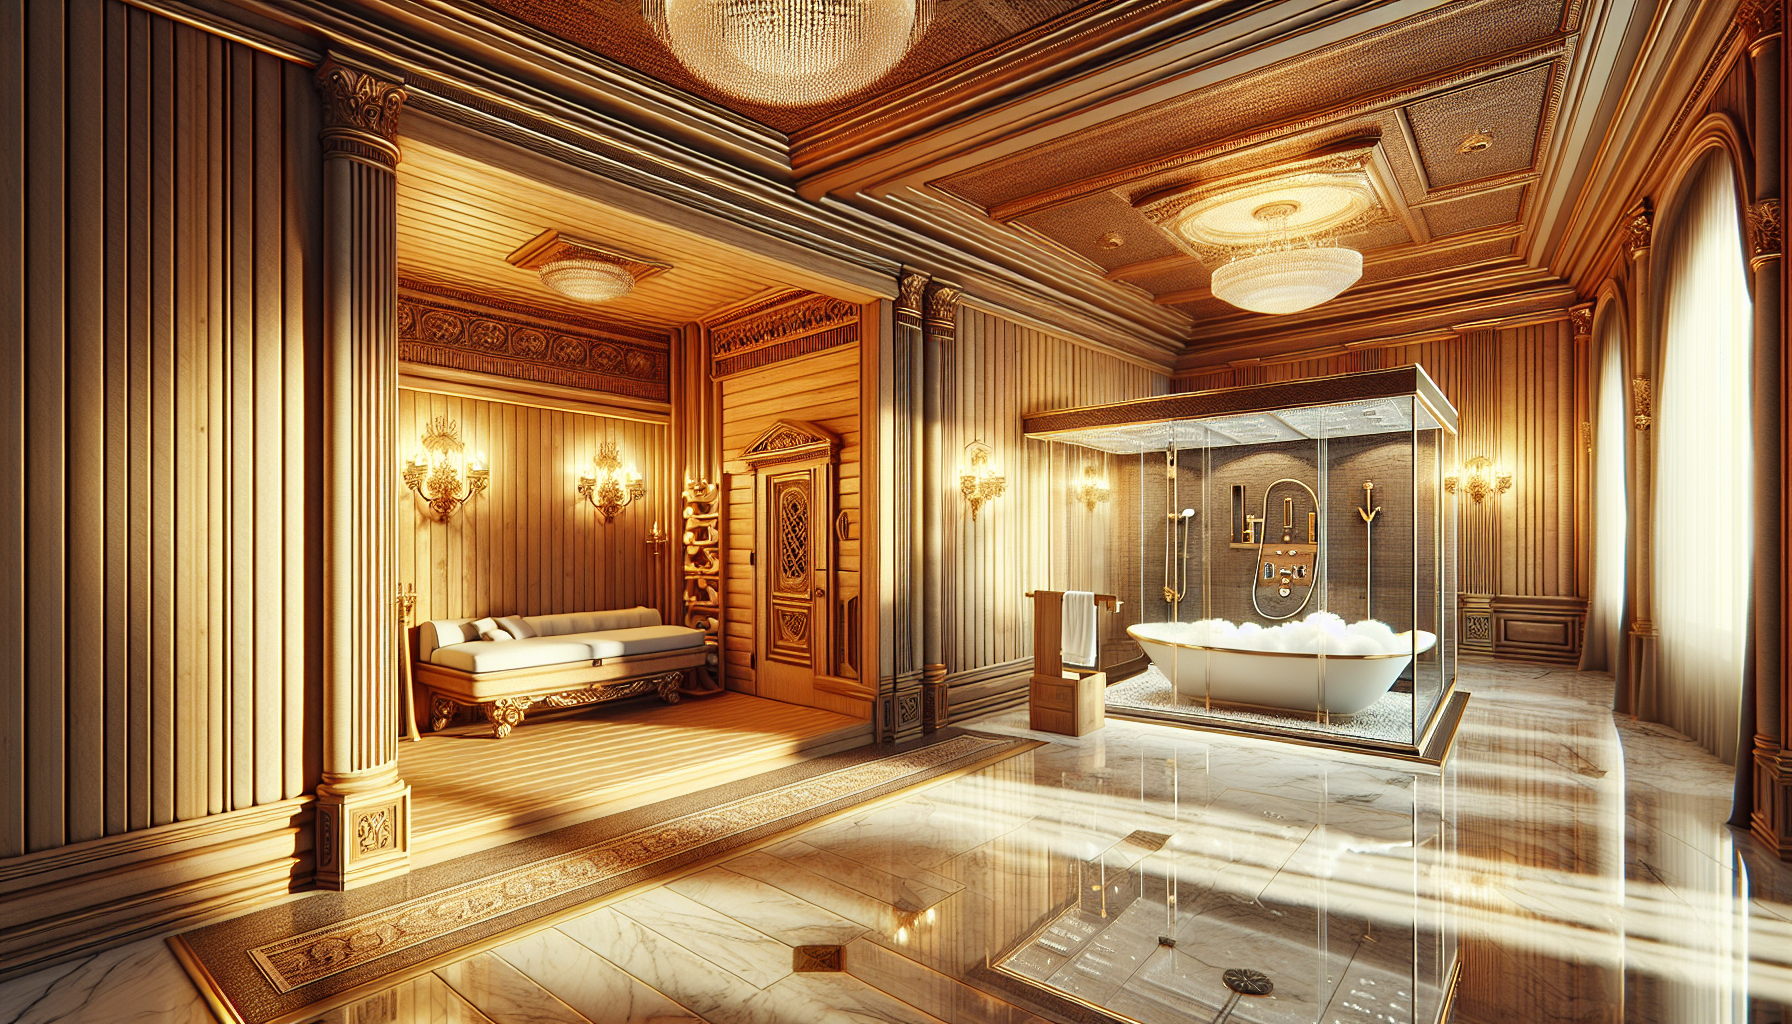 Luxuriöse Elemente für das große Bad: Illustration einer Sauna, einer freistehenden Badewanne und einer Dampfdusche in einem luxuriösen Badezimmer